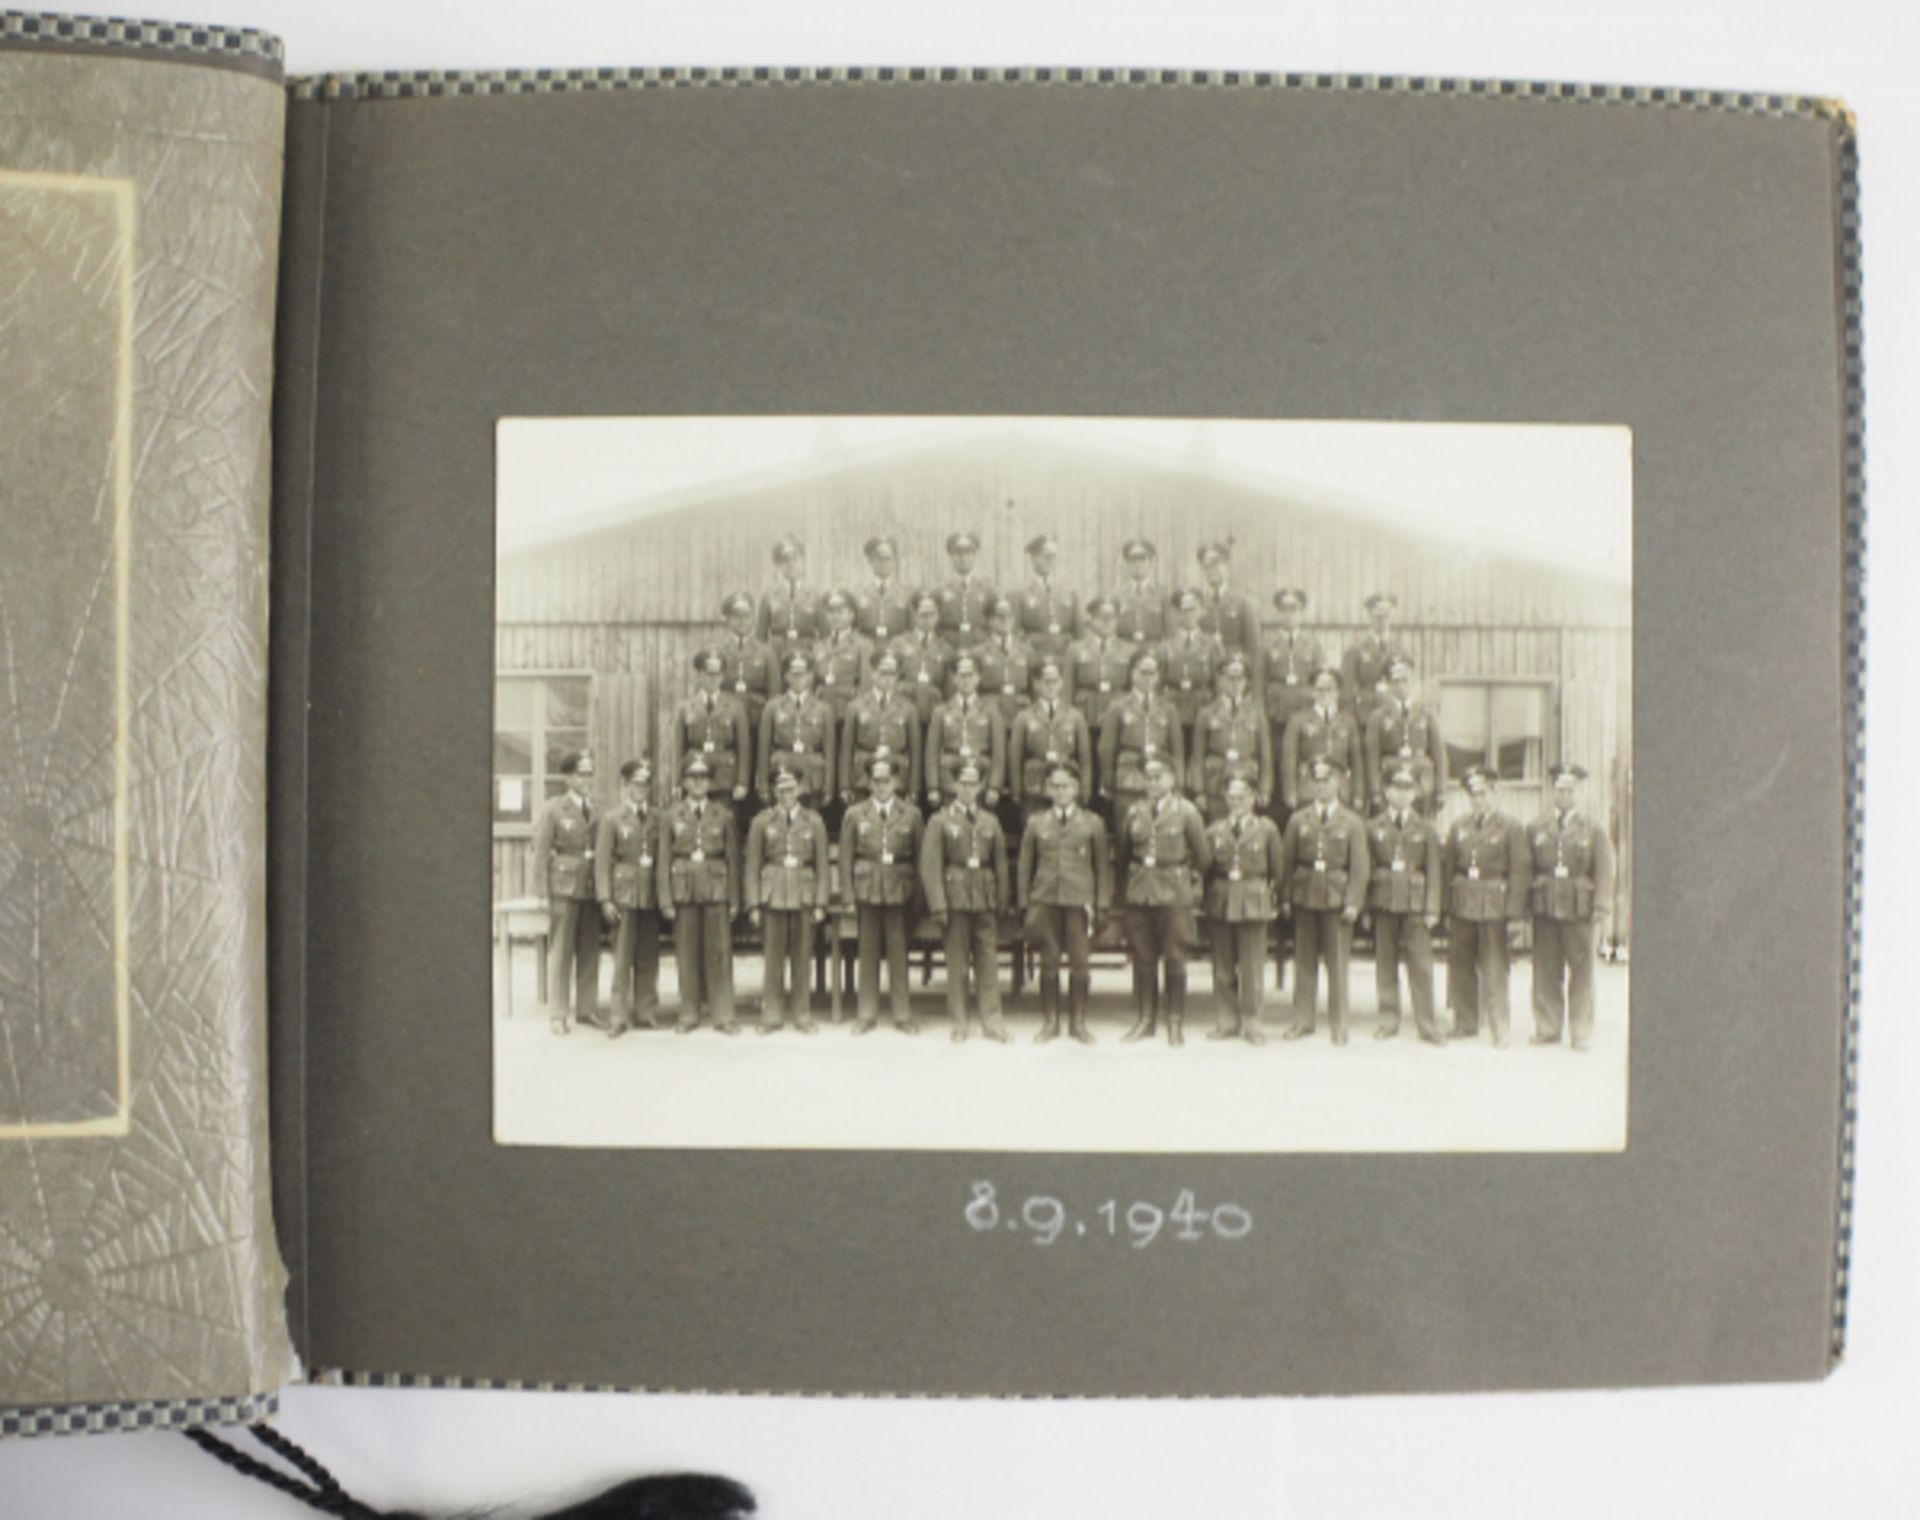 Fotoalbum der 4. Batterie, Flak-Regiment 5 - München 1937.Karierter Einband, 85 Fotos, diverse - Image 2 of 4